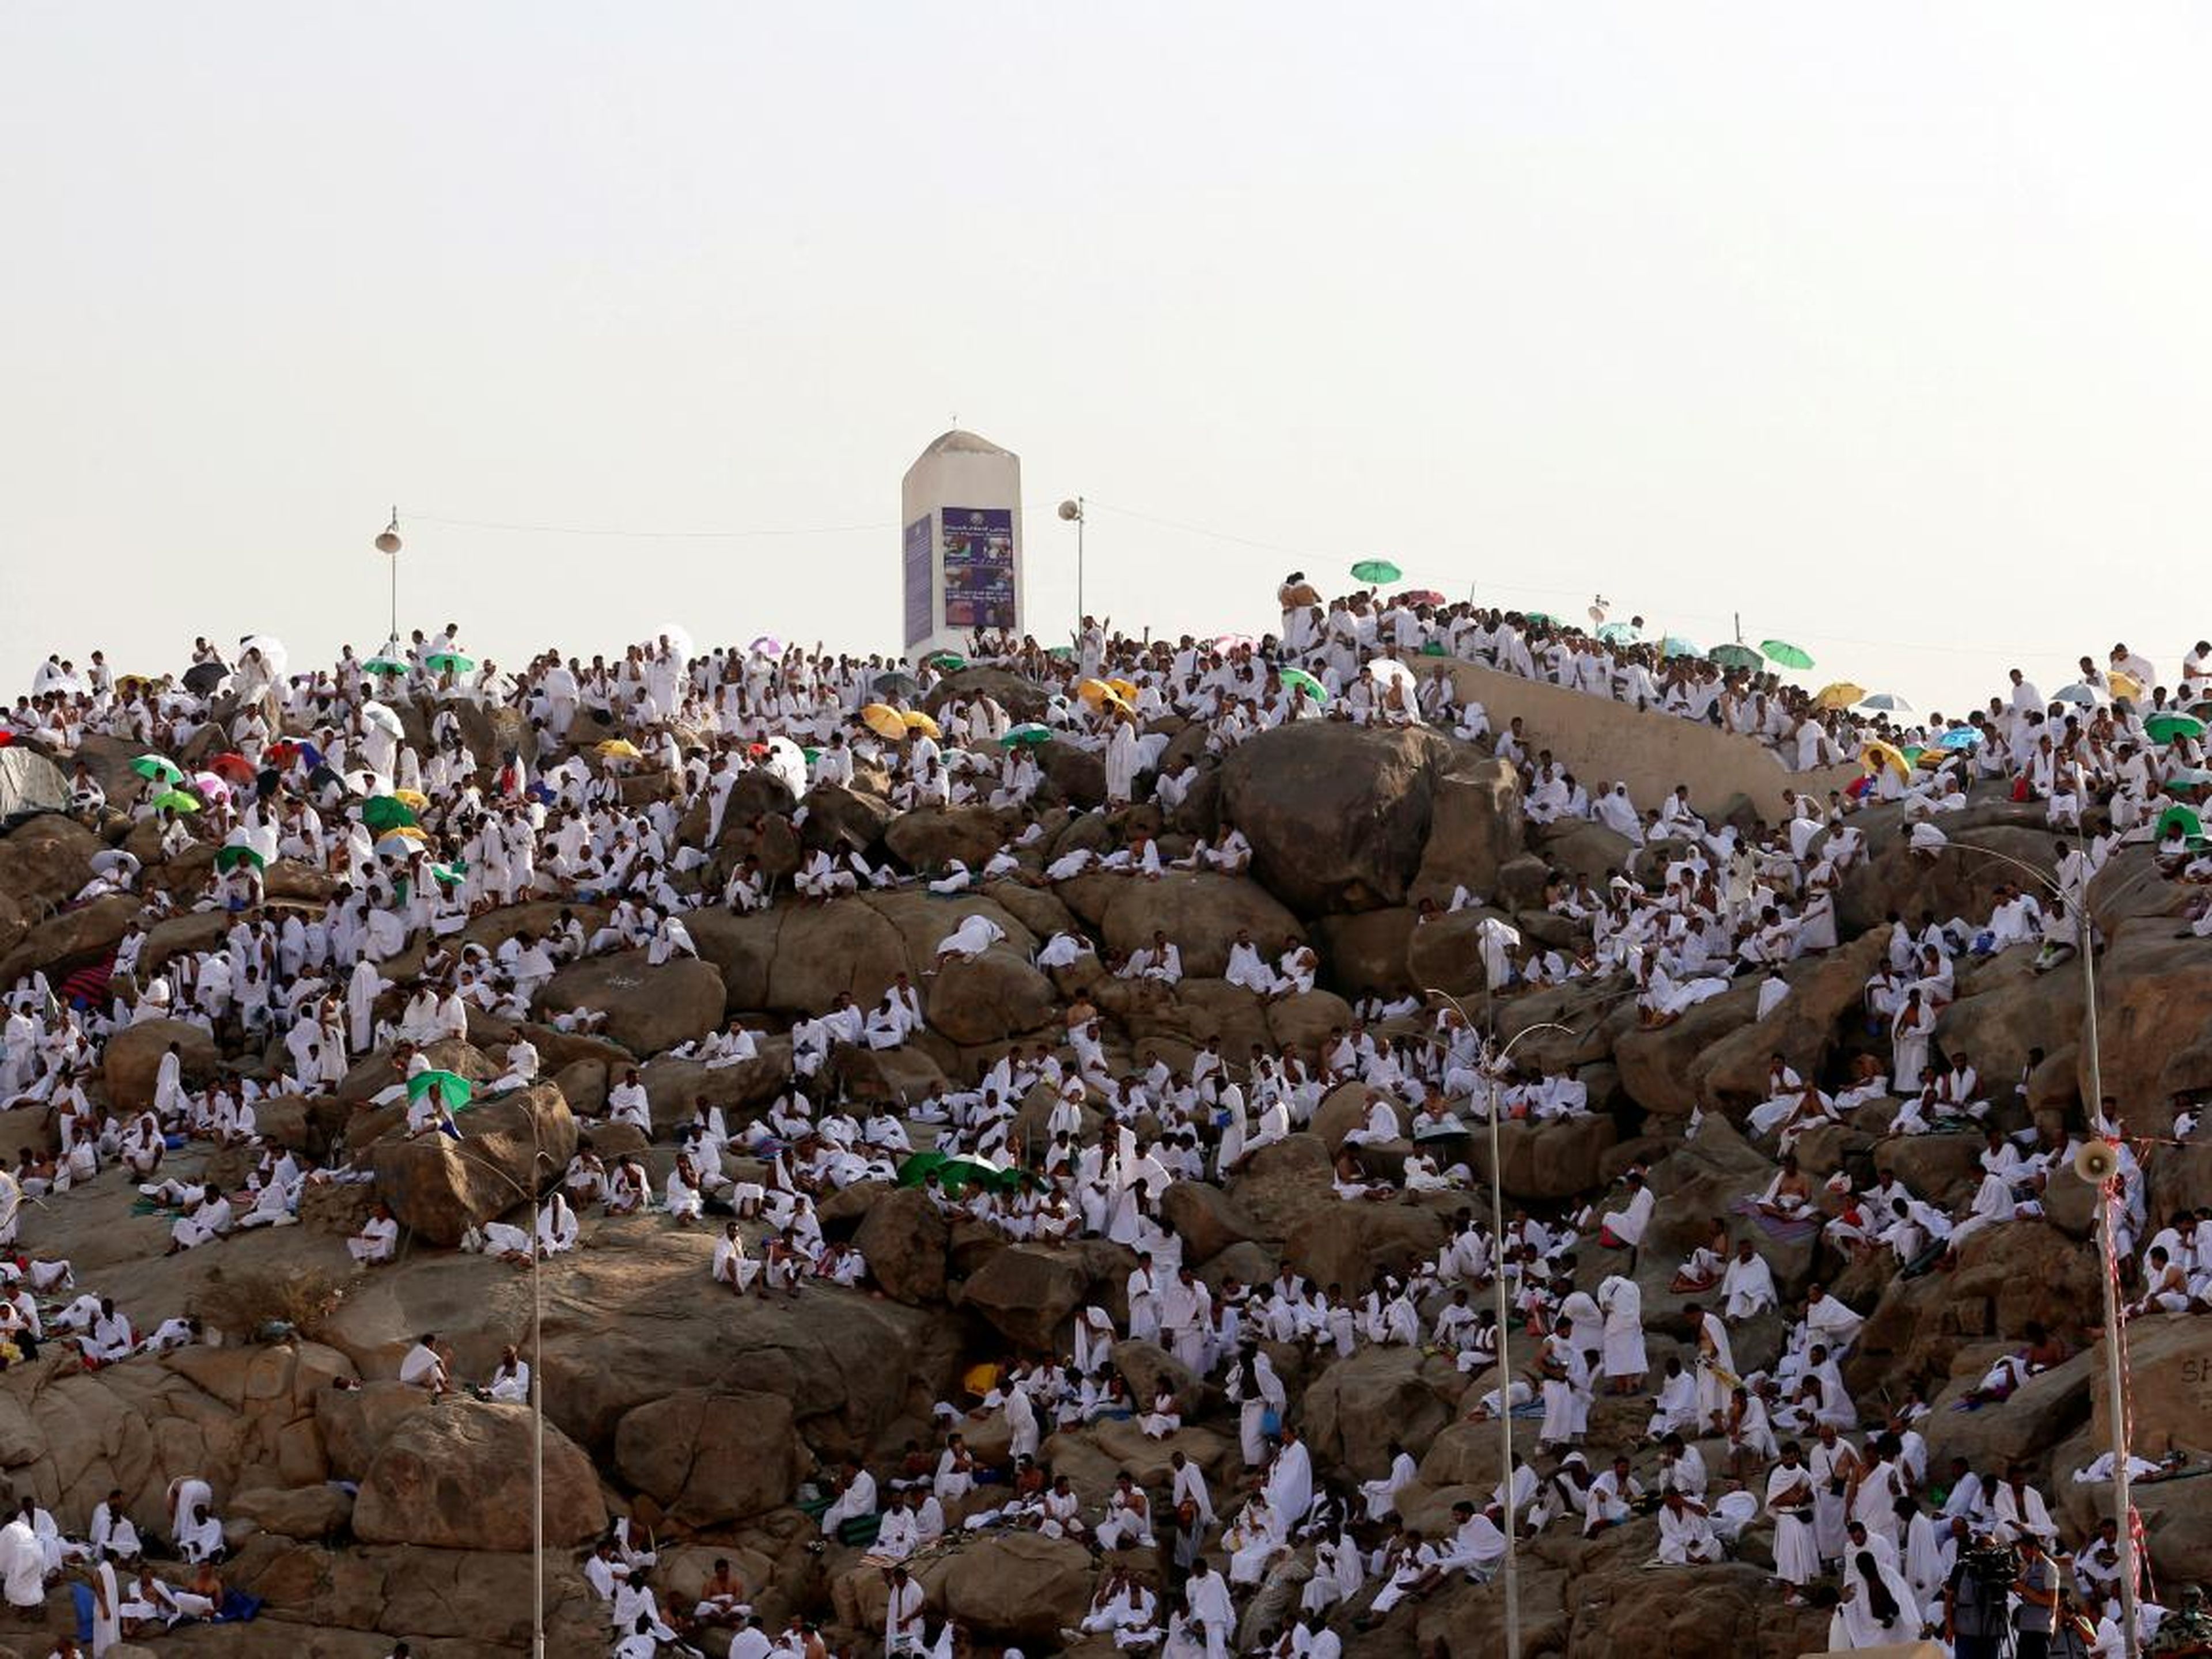 Los peregrinos musulmanes se reúnen en el Monte de la Misericordia en las llanuras de Arafat durante la peregrinación anual del haj, en las afueras de la ciudad sagrada de La Meca, Arabia Saudí, el 11 de septiembre de 2016.